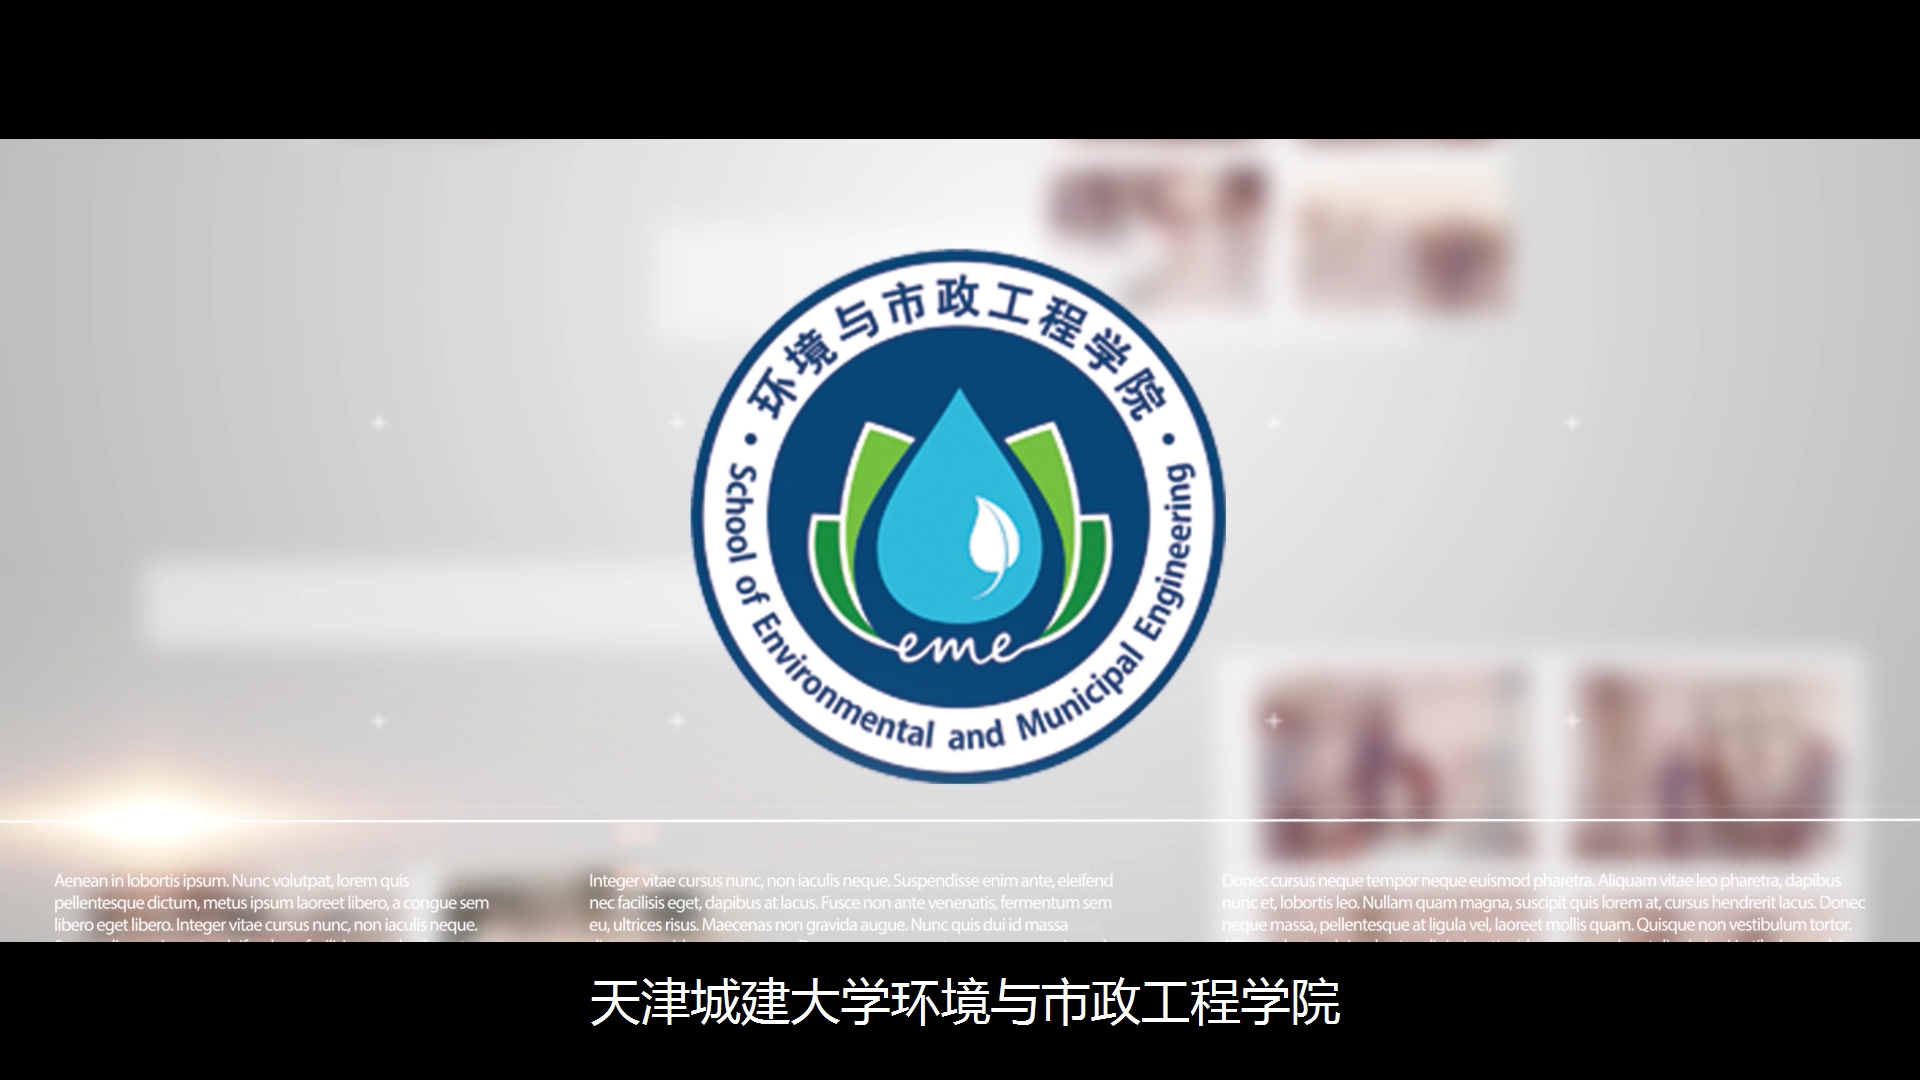 线上看学院 环境与市政工程学院天津城建大学环境与市政工程学院